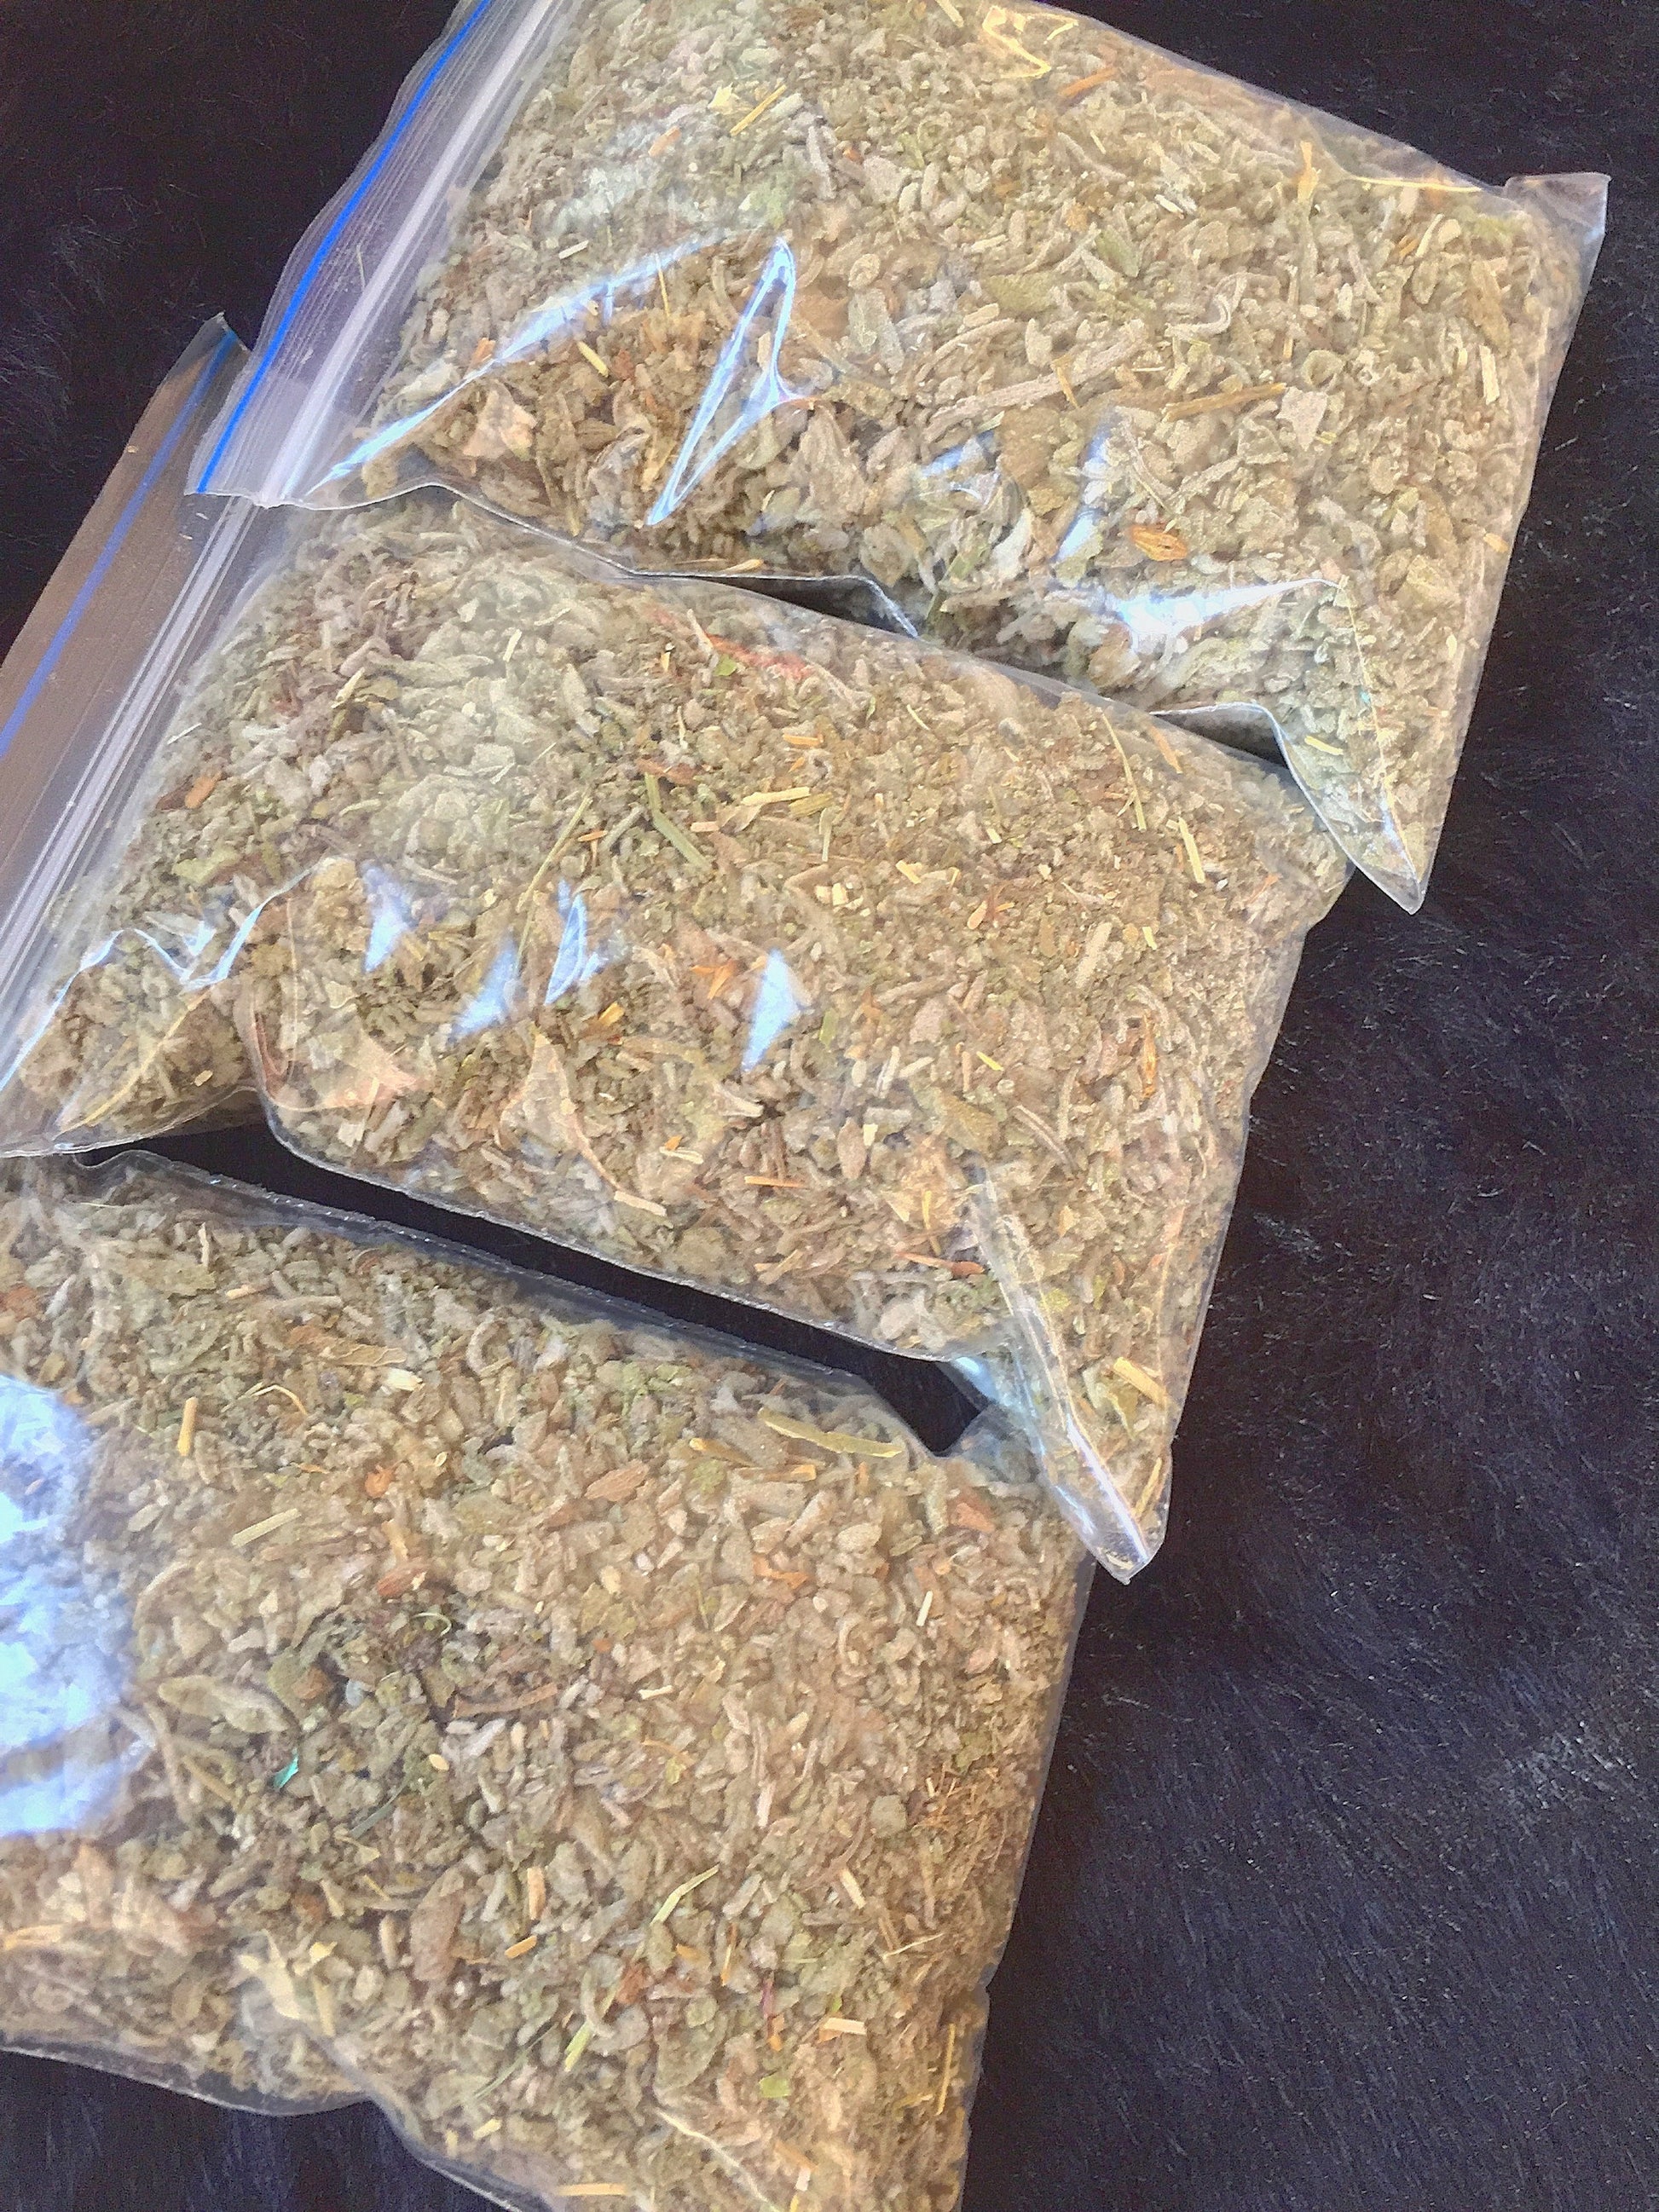 Loose Sage Herb Cut - 50 Gm Herbs